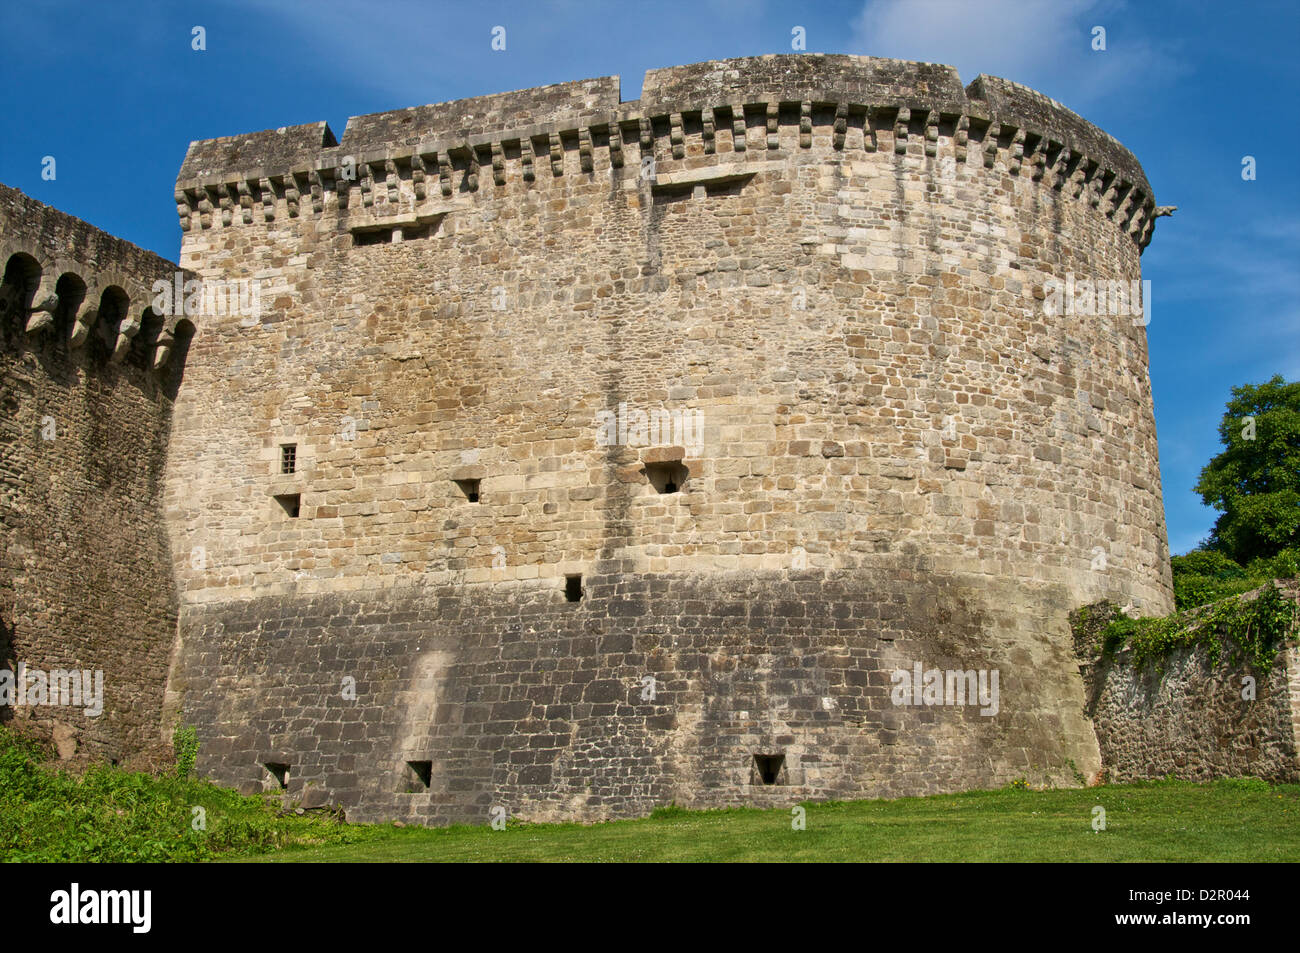 Tour de ville de Sainte-Catherine, murs extérieurs, tour fortifiée datant du 13ème siècle, Dinan, Bretagne, France, Europe Banque D'Images